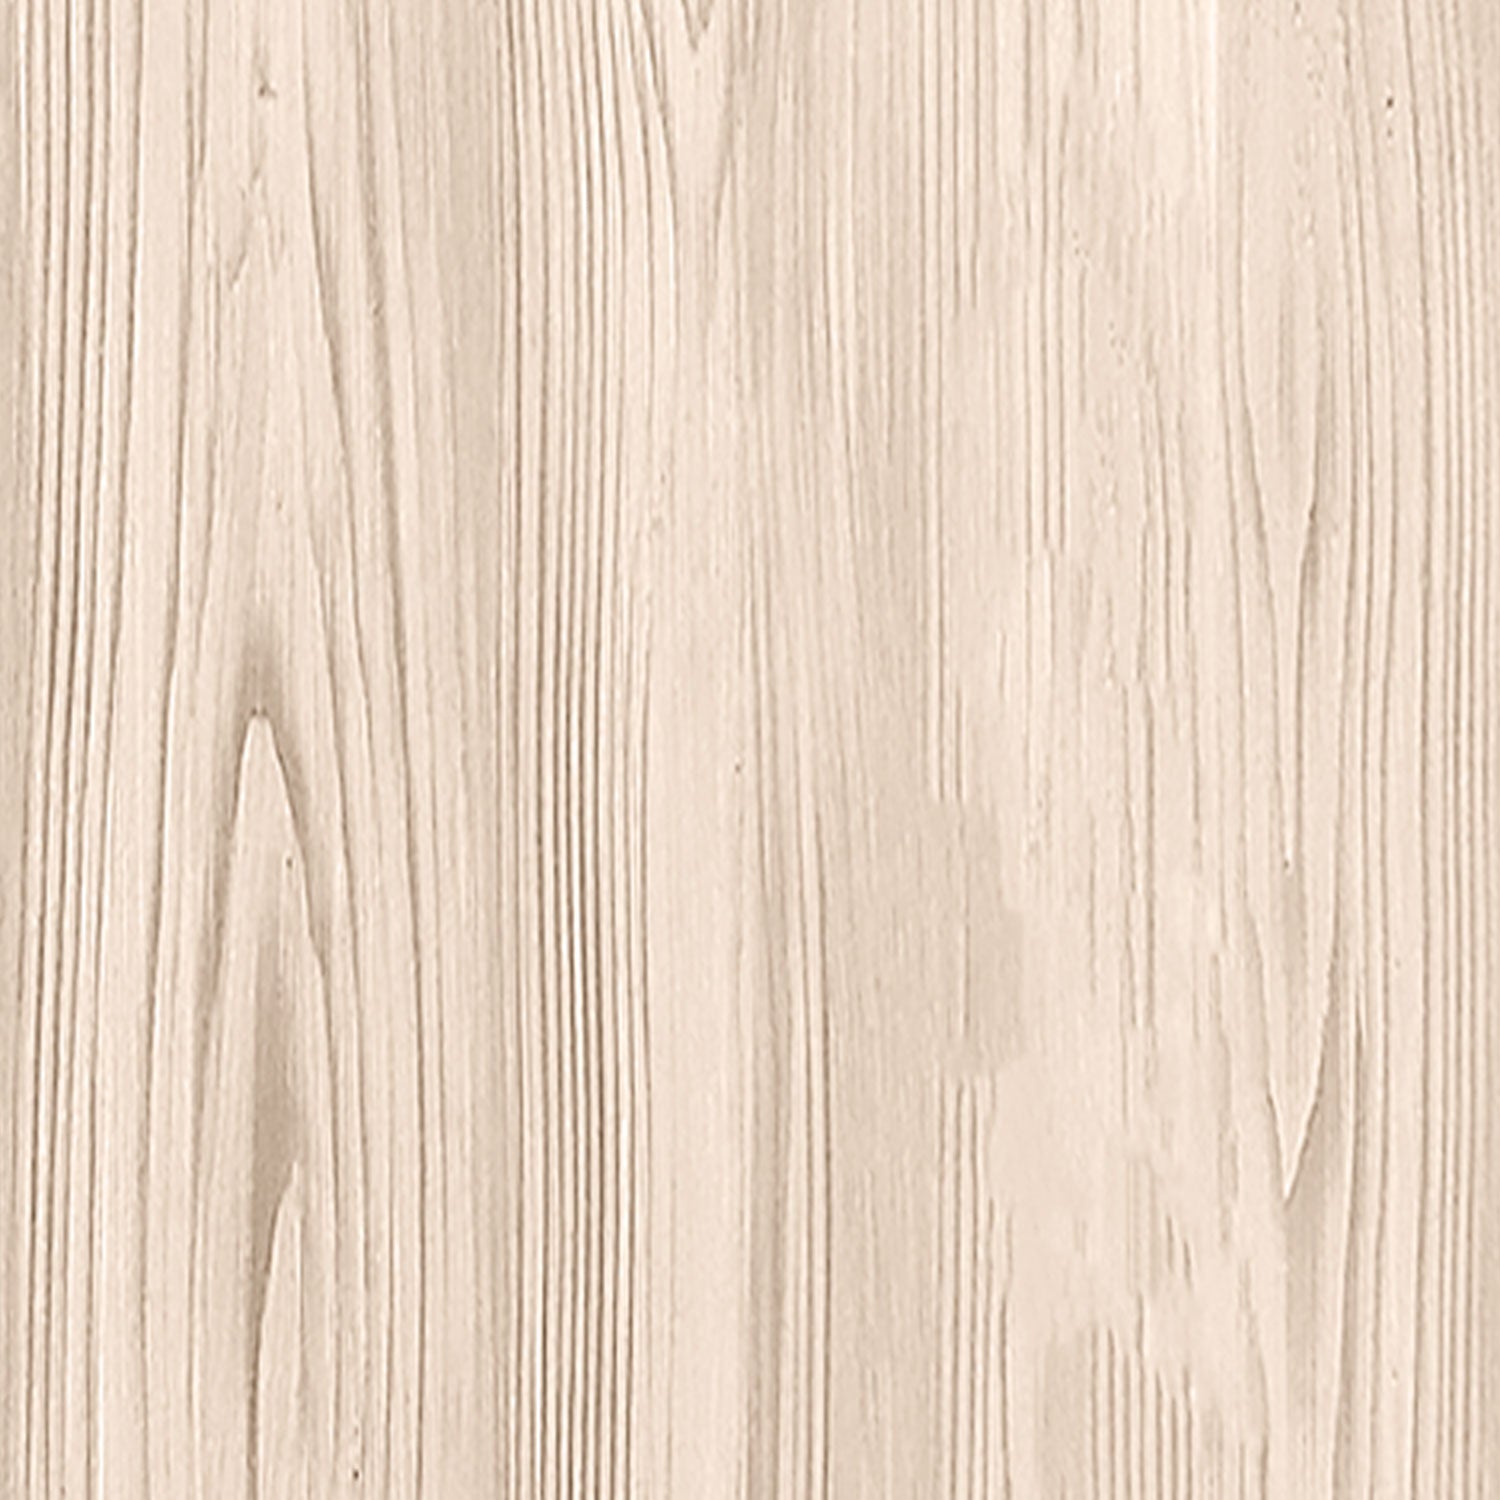 Multi-purpose Wood'n Kit (Large) - White Oak - Interior Top Coat